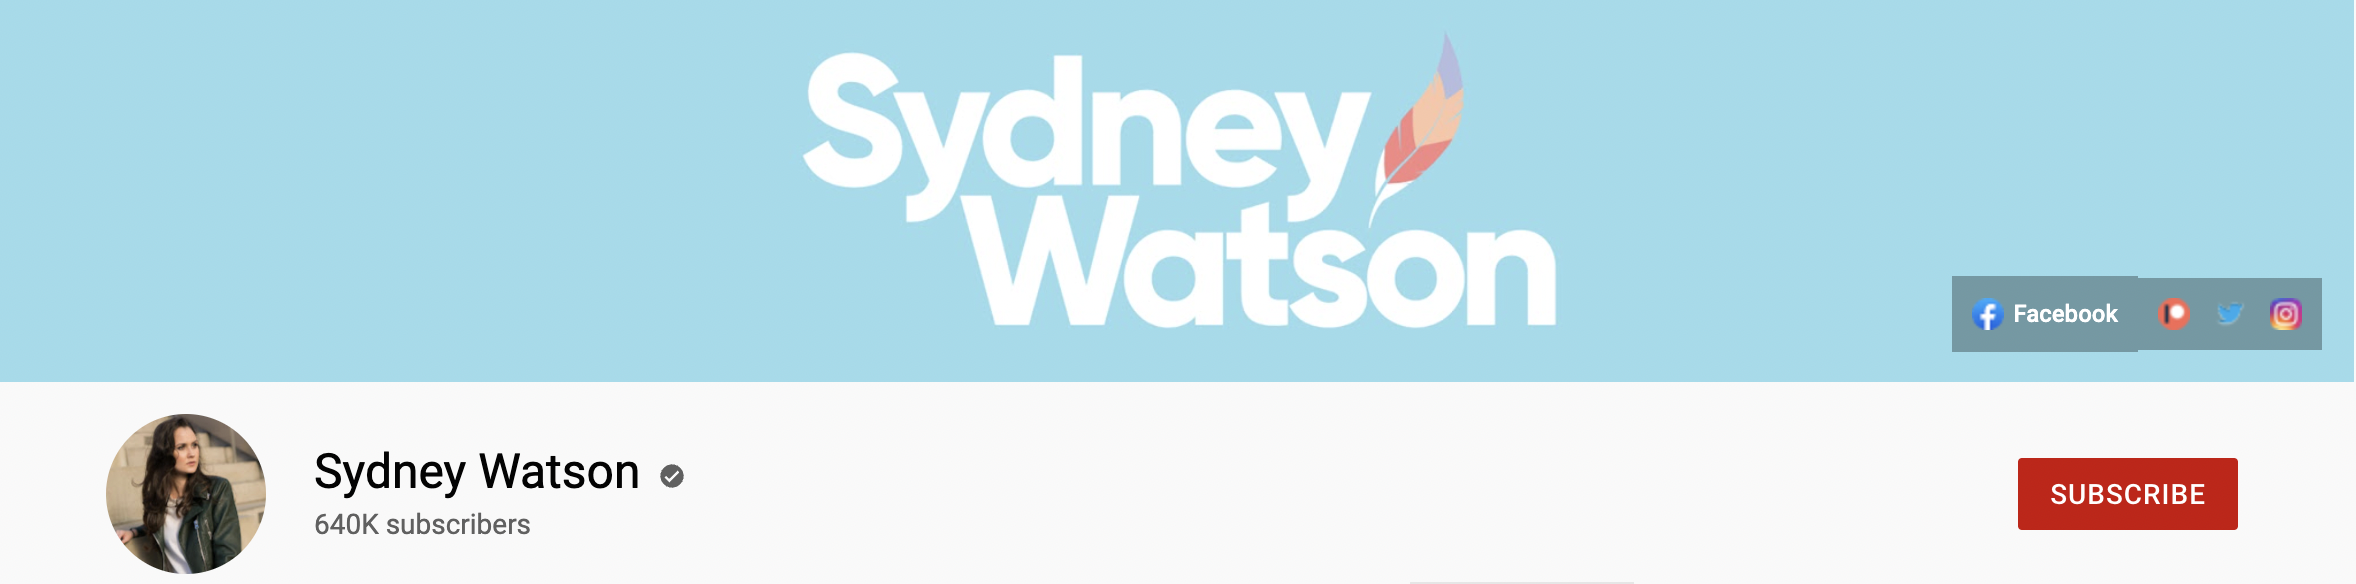 Sydney Watson Youtube Channel